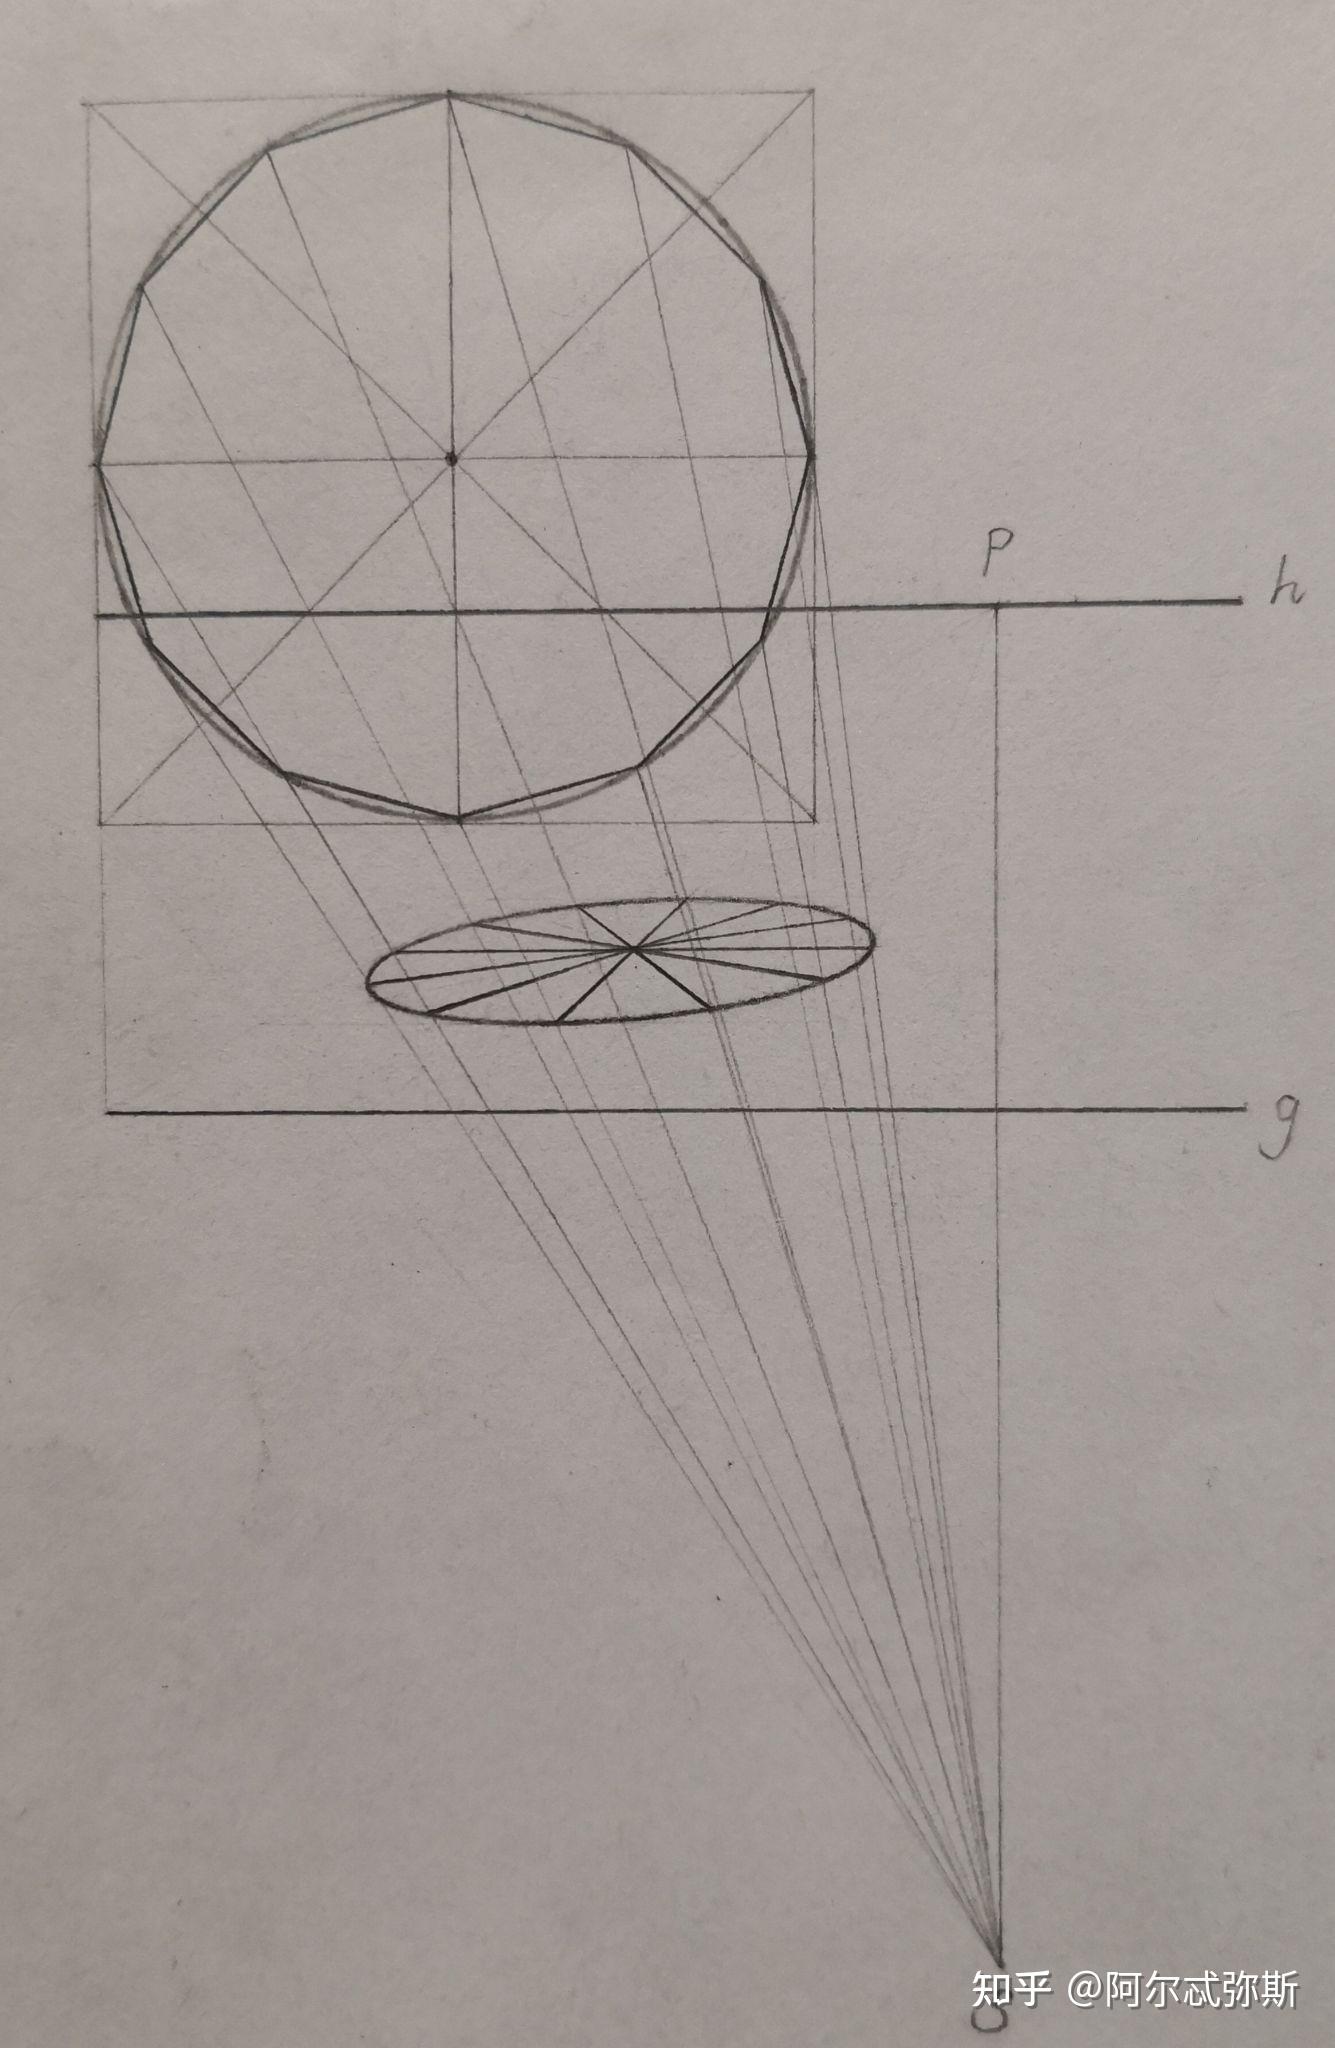 怎么在透视中画出一个被等分为n个扇形的圆呢? 